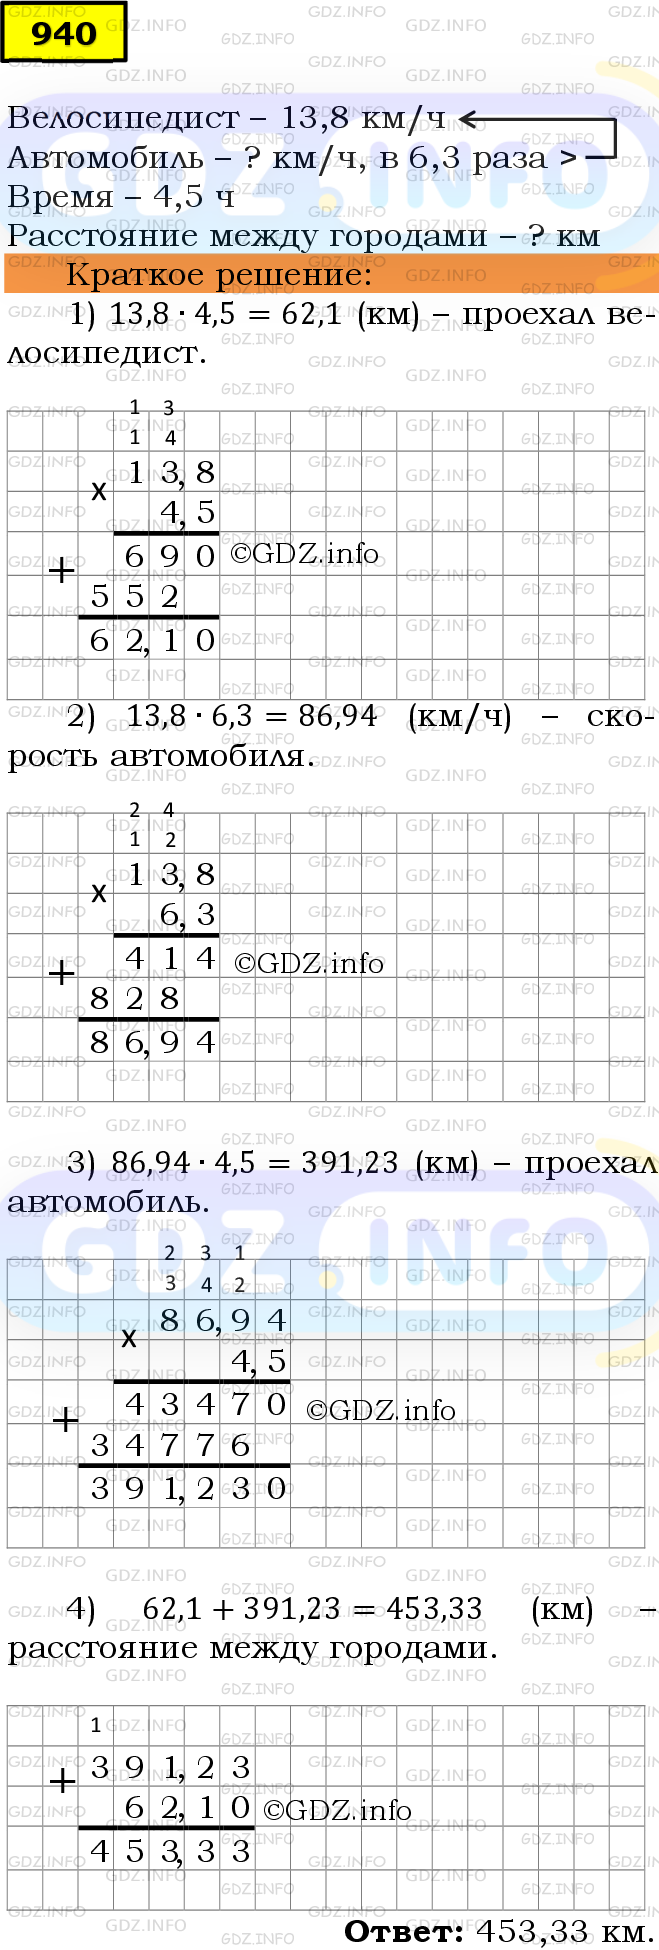 Фото решения 6: Номер №940 из ГДЗ по Математике 5 класс: Мерзляк А.Г. г.